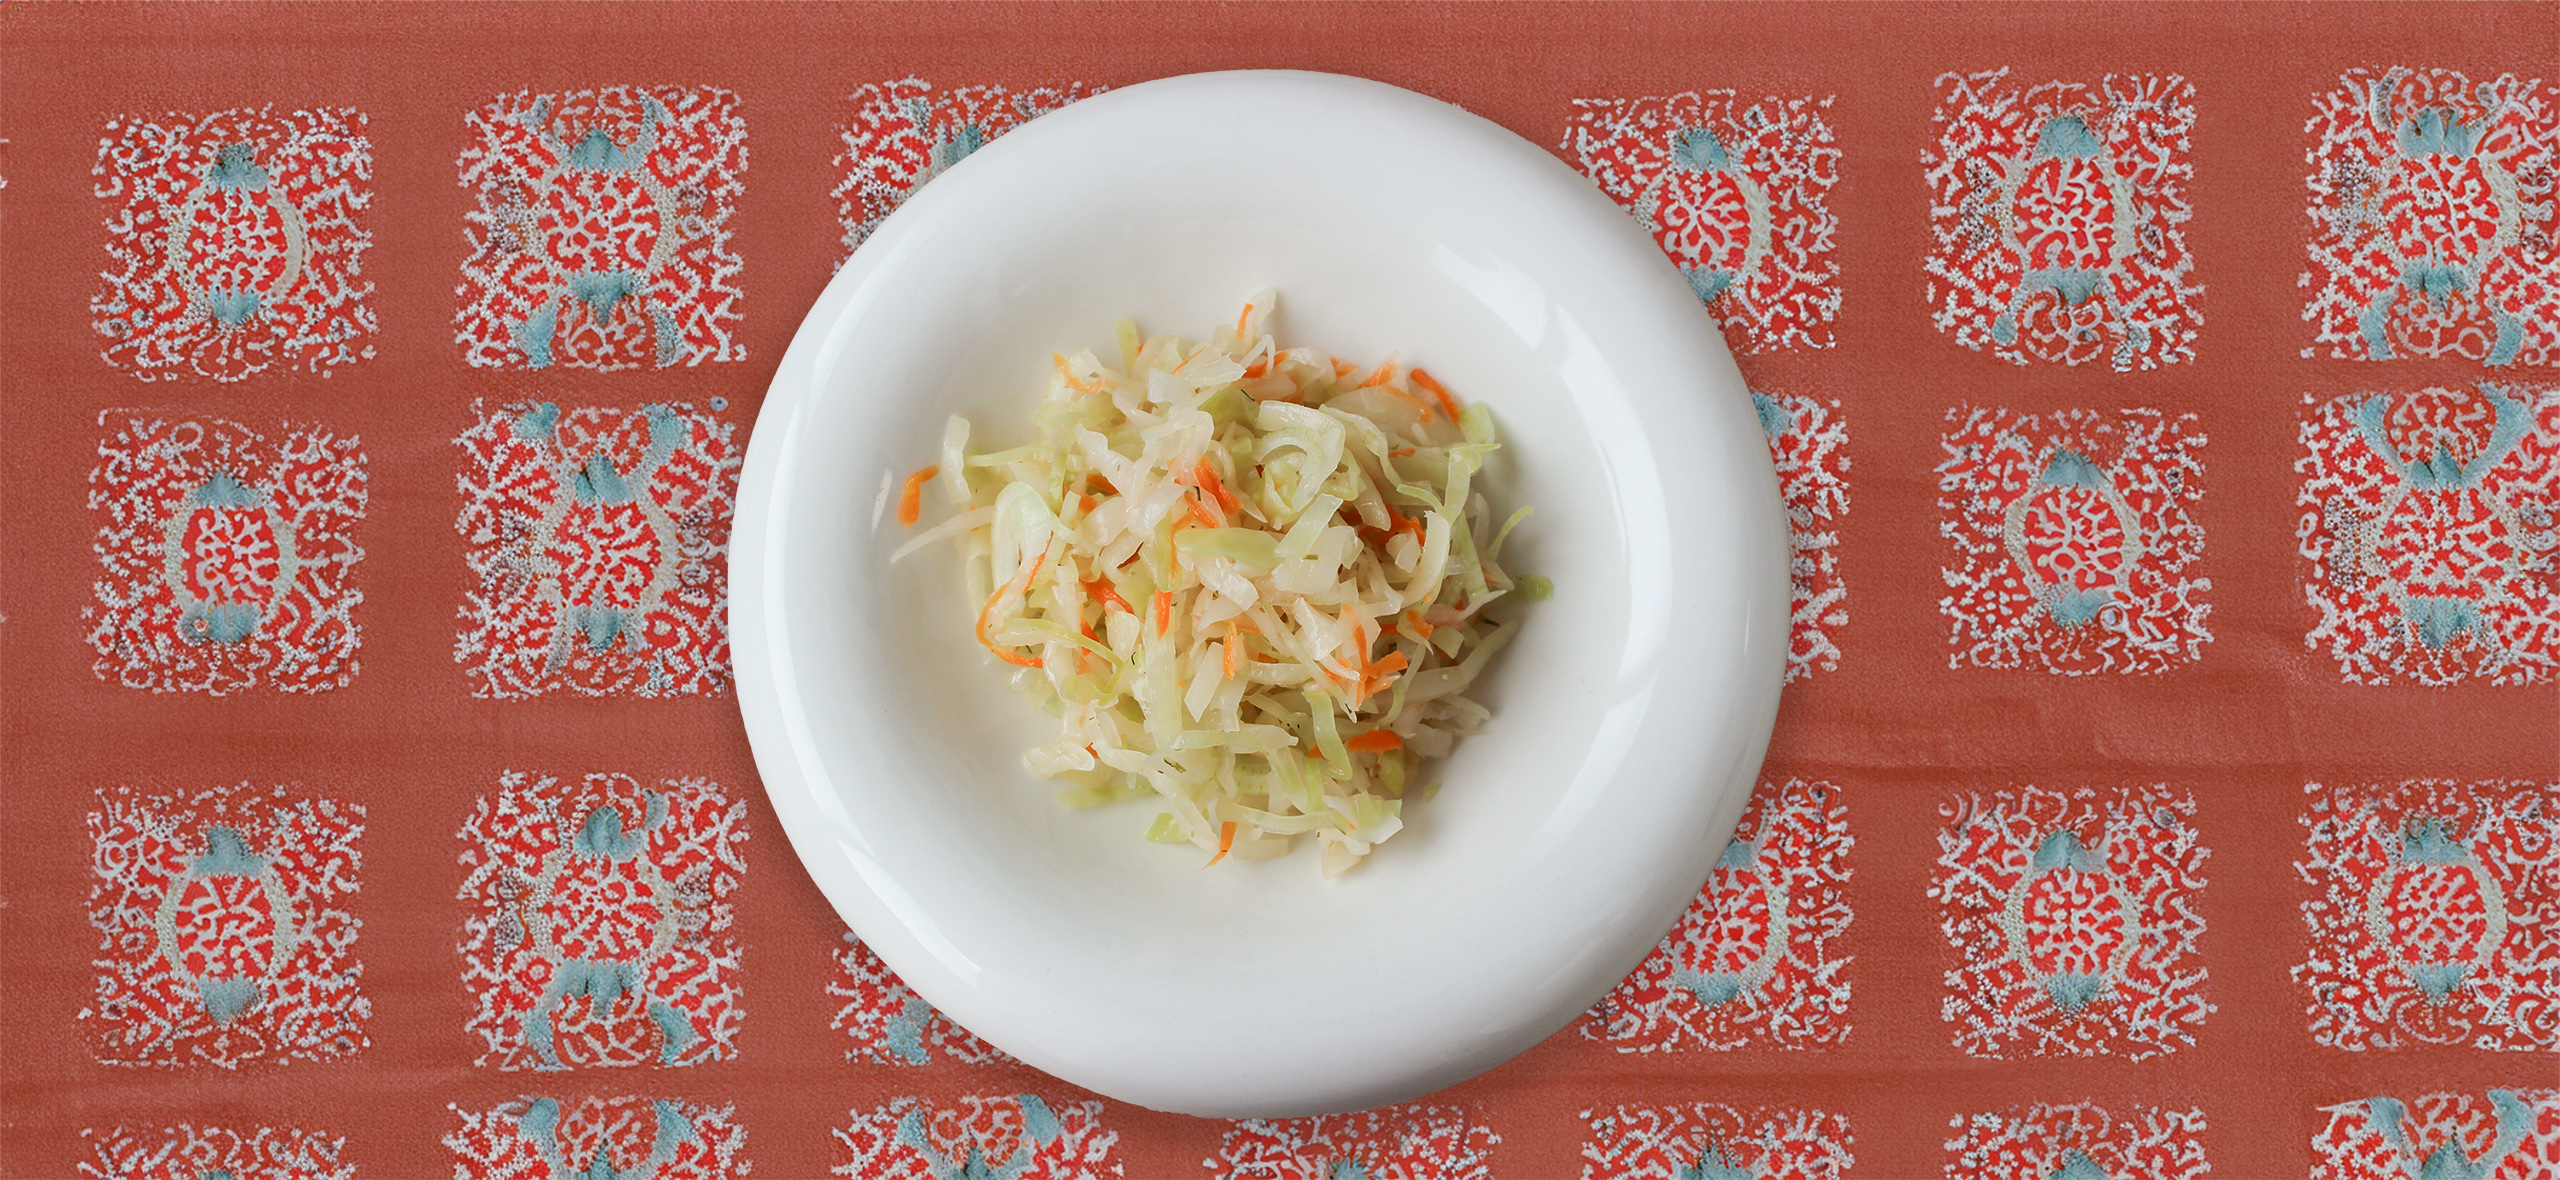 Рецепт квашеной капусты на зиму в домашних условиях: пошаговый способ  приготовления с фото, ингредиенты, количество порций и стоимость